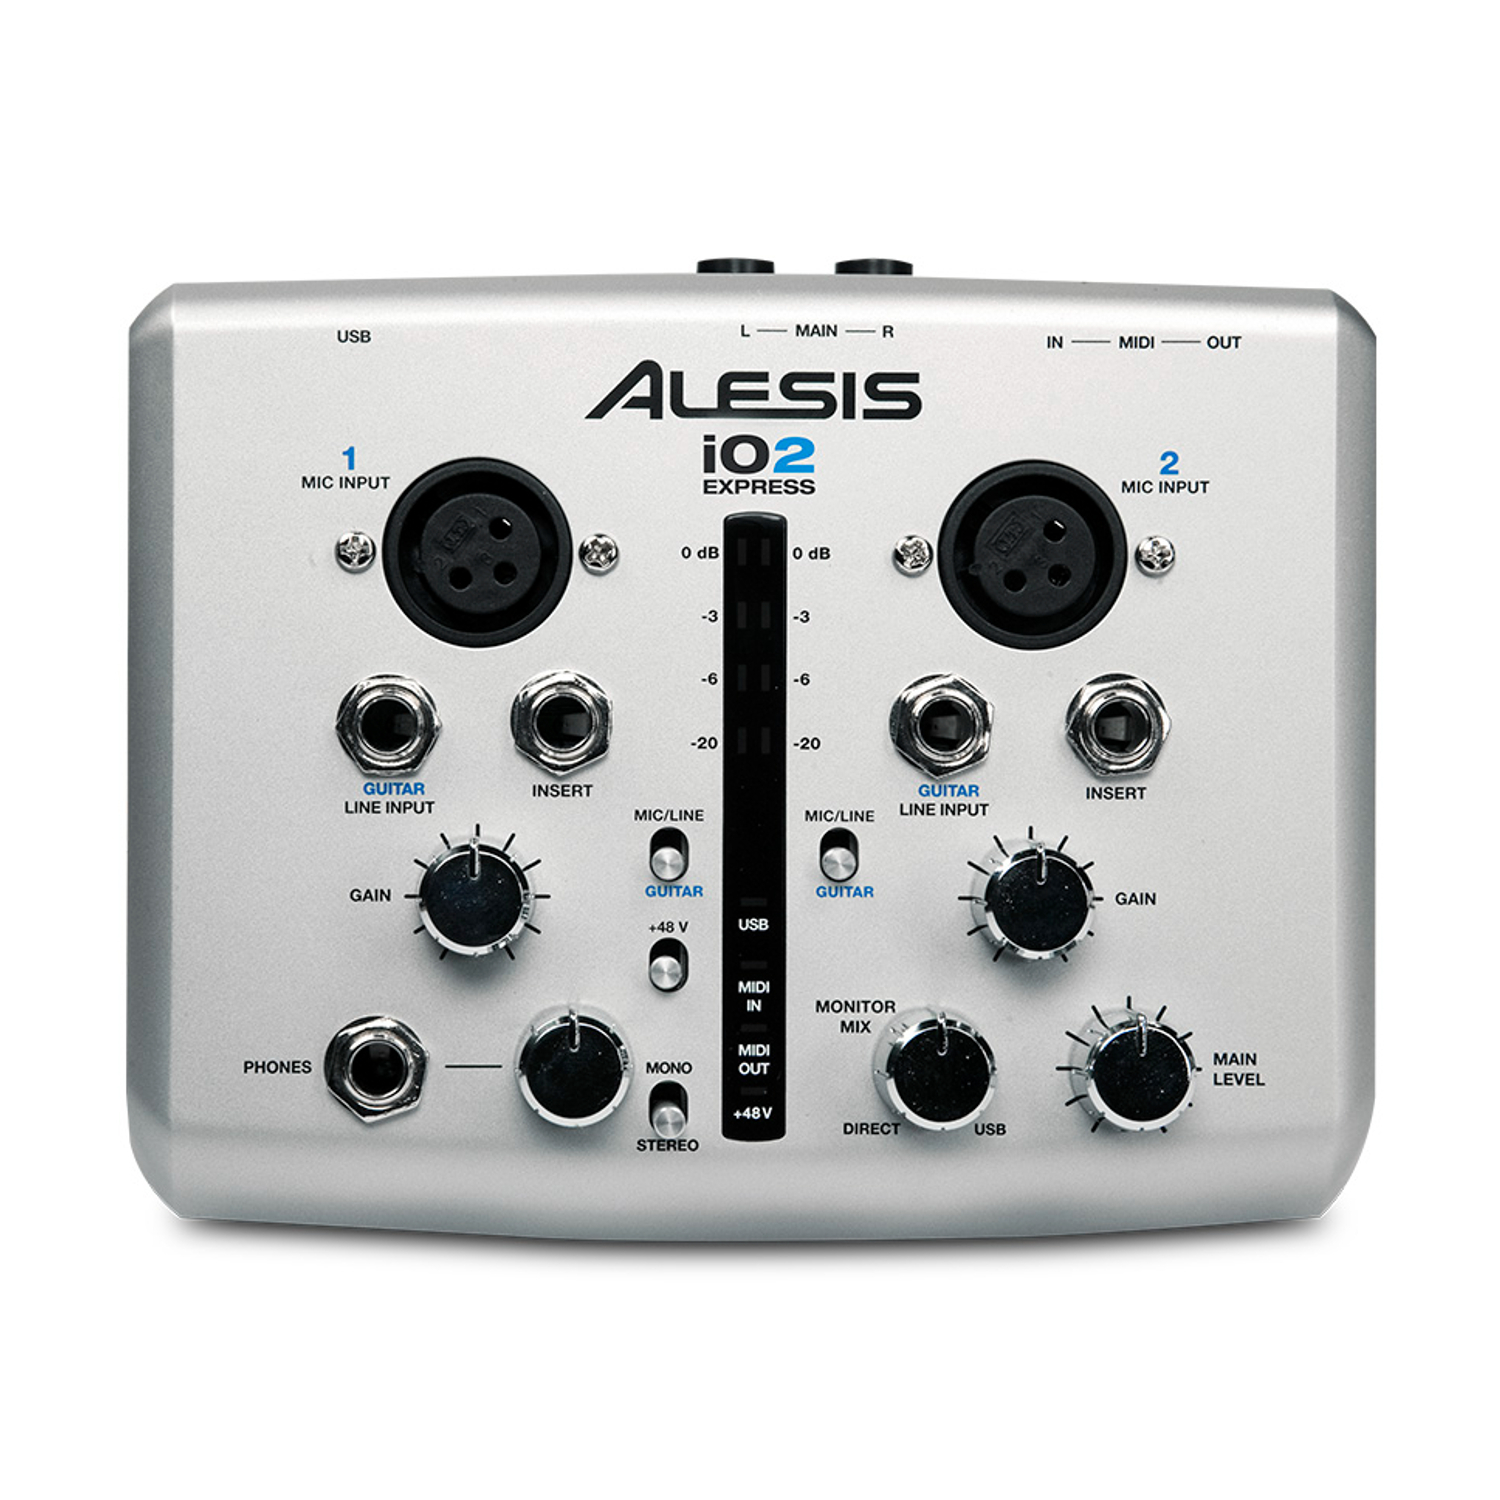 Alesis IO 2 Express - Spare Parts